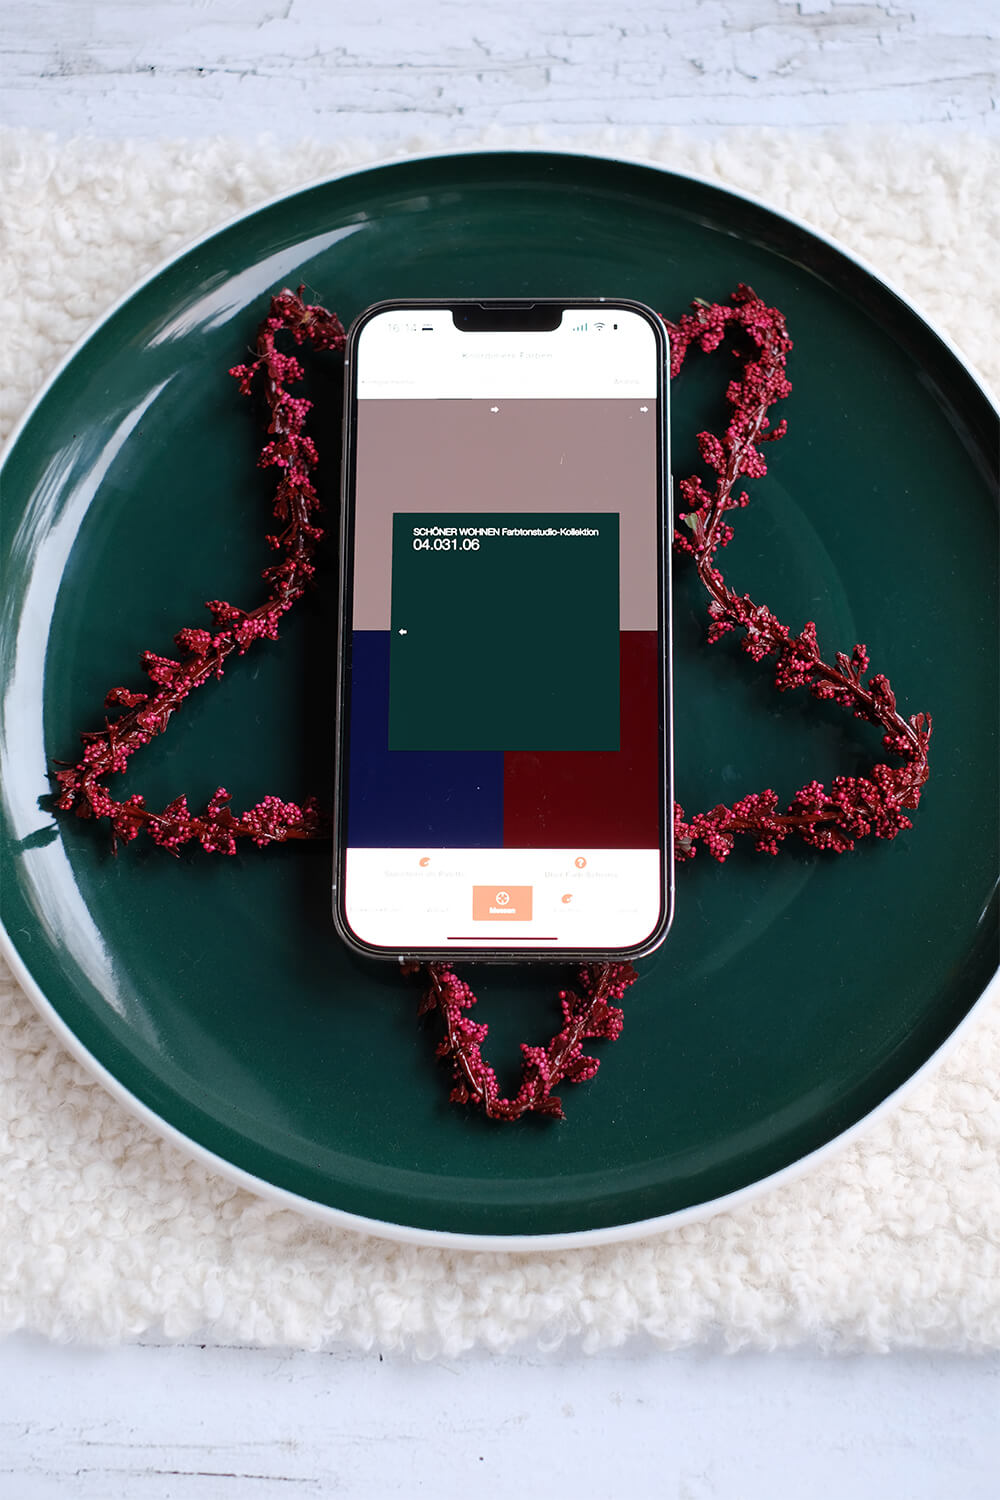 DIYnachten mit Datacolor und dem ColorReader EZ - Frablich passende Tischdeko für Weihnachten von Gingered Things